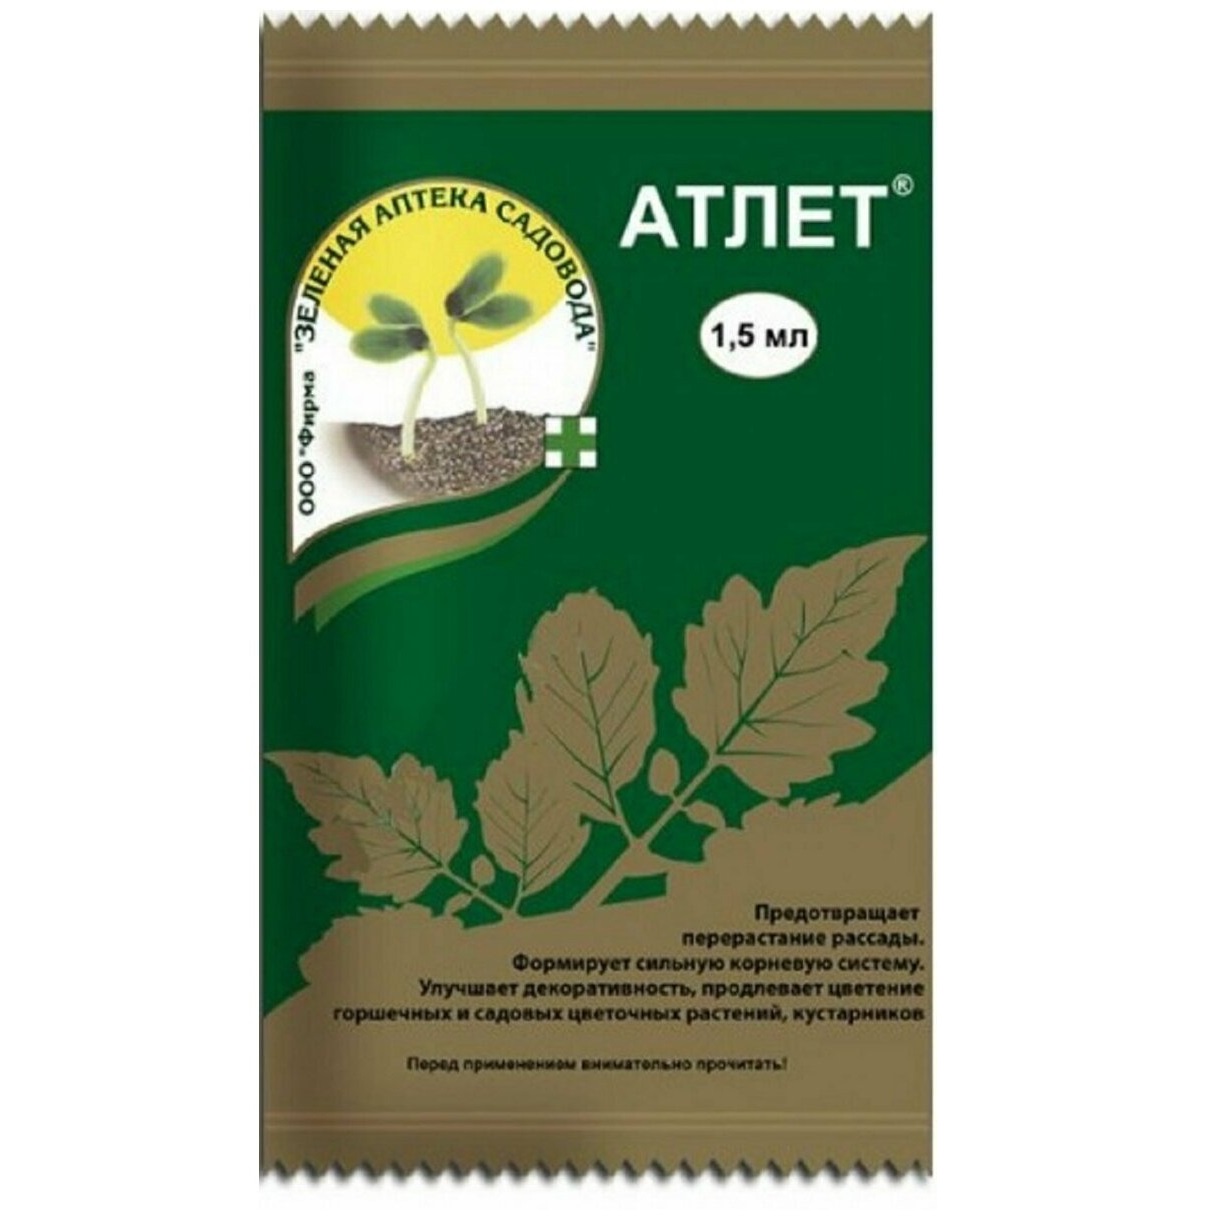 Зеленая аптека садовода Атлет 1.5 мл регулятор роста корней зеленая аптека садовода 5г